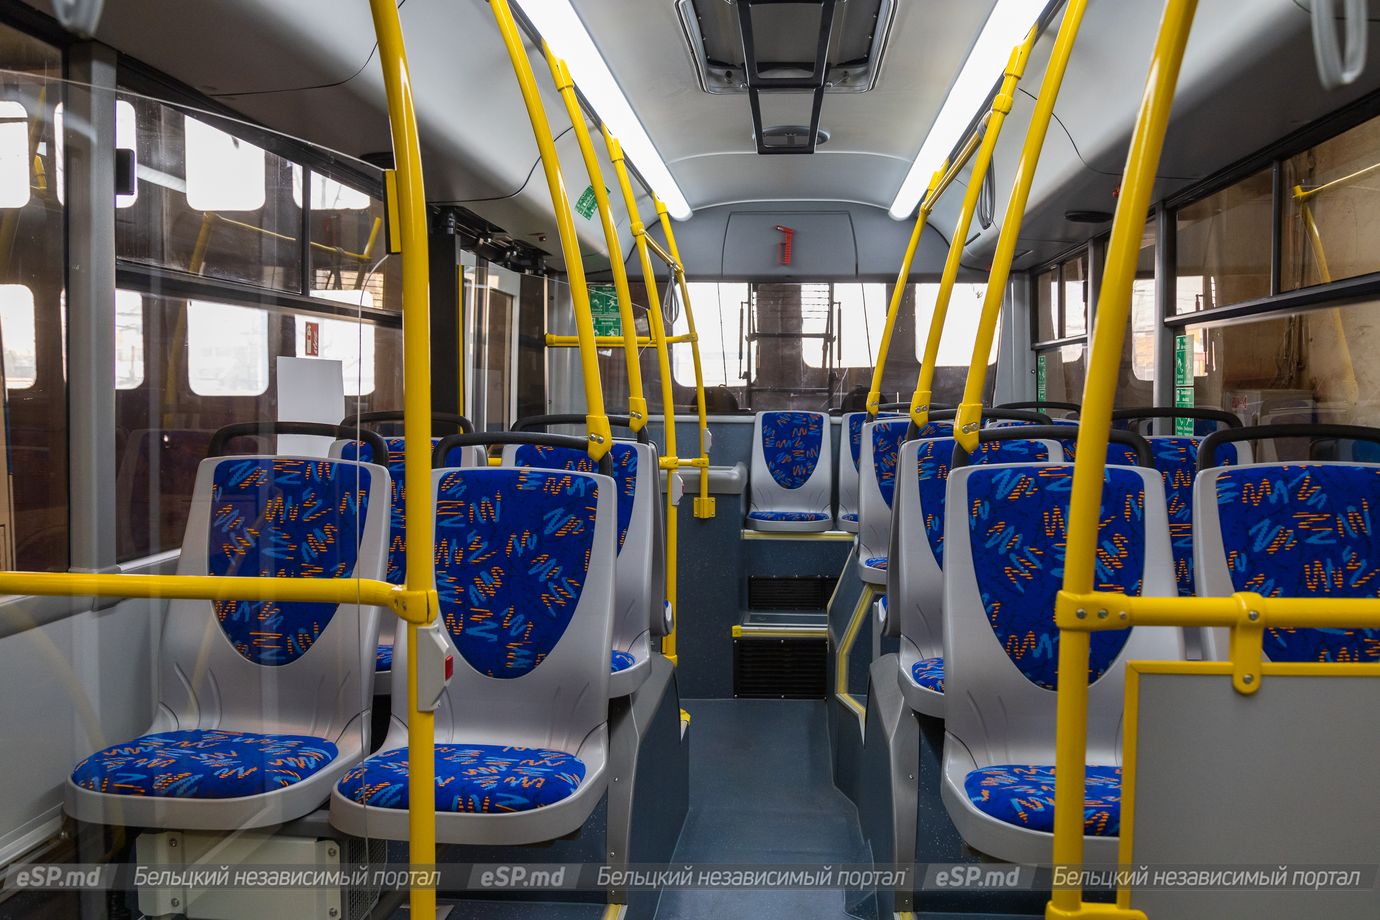 Belci, Dnipro T203 № 2024; Belci — New Dnipro-T203 trolleybuses 2021